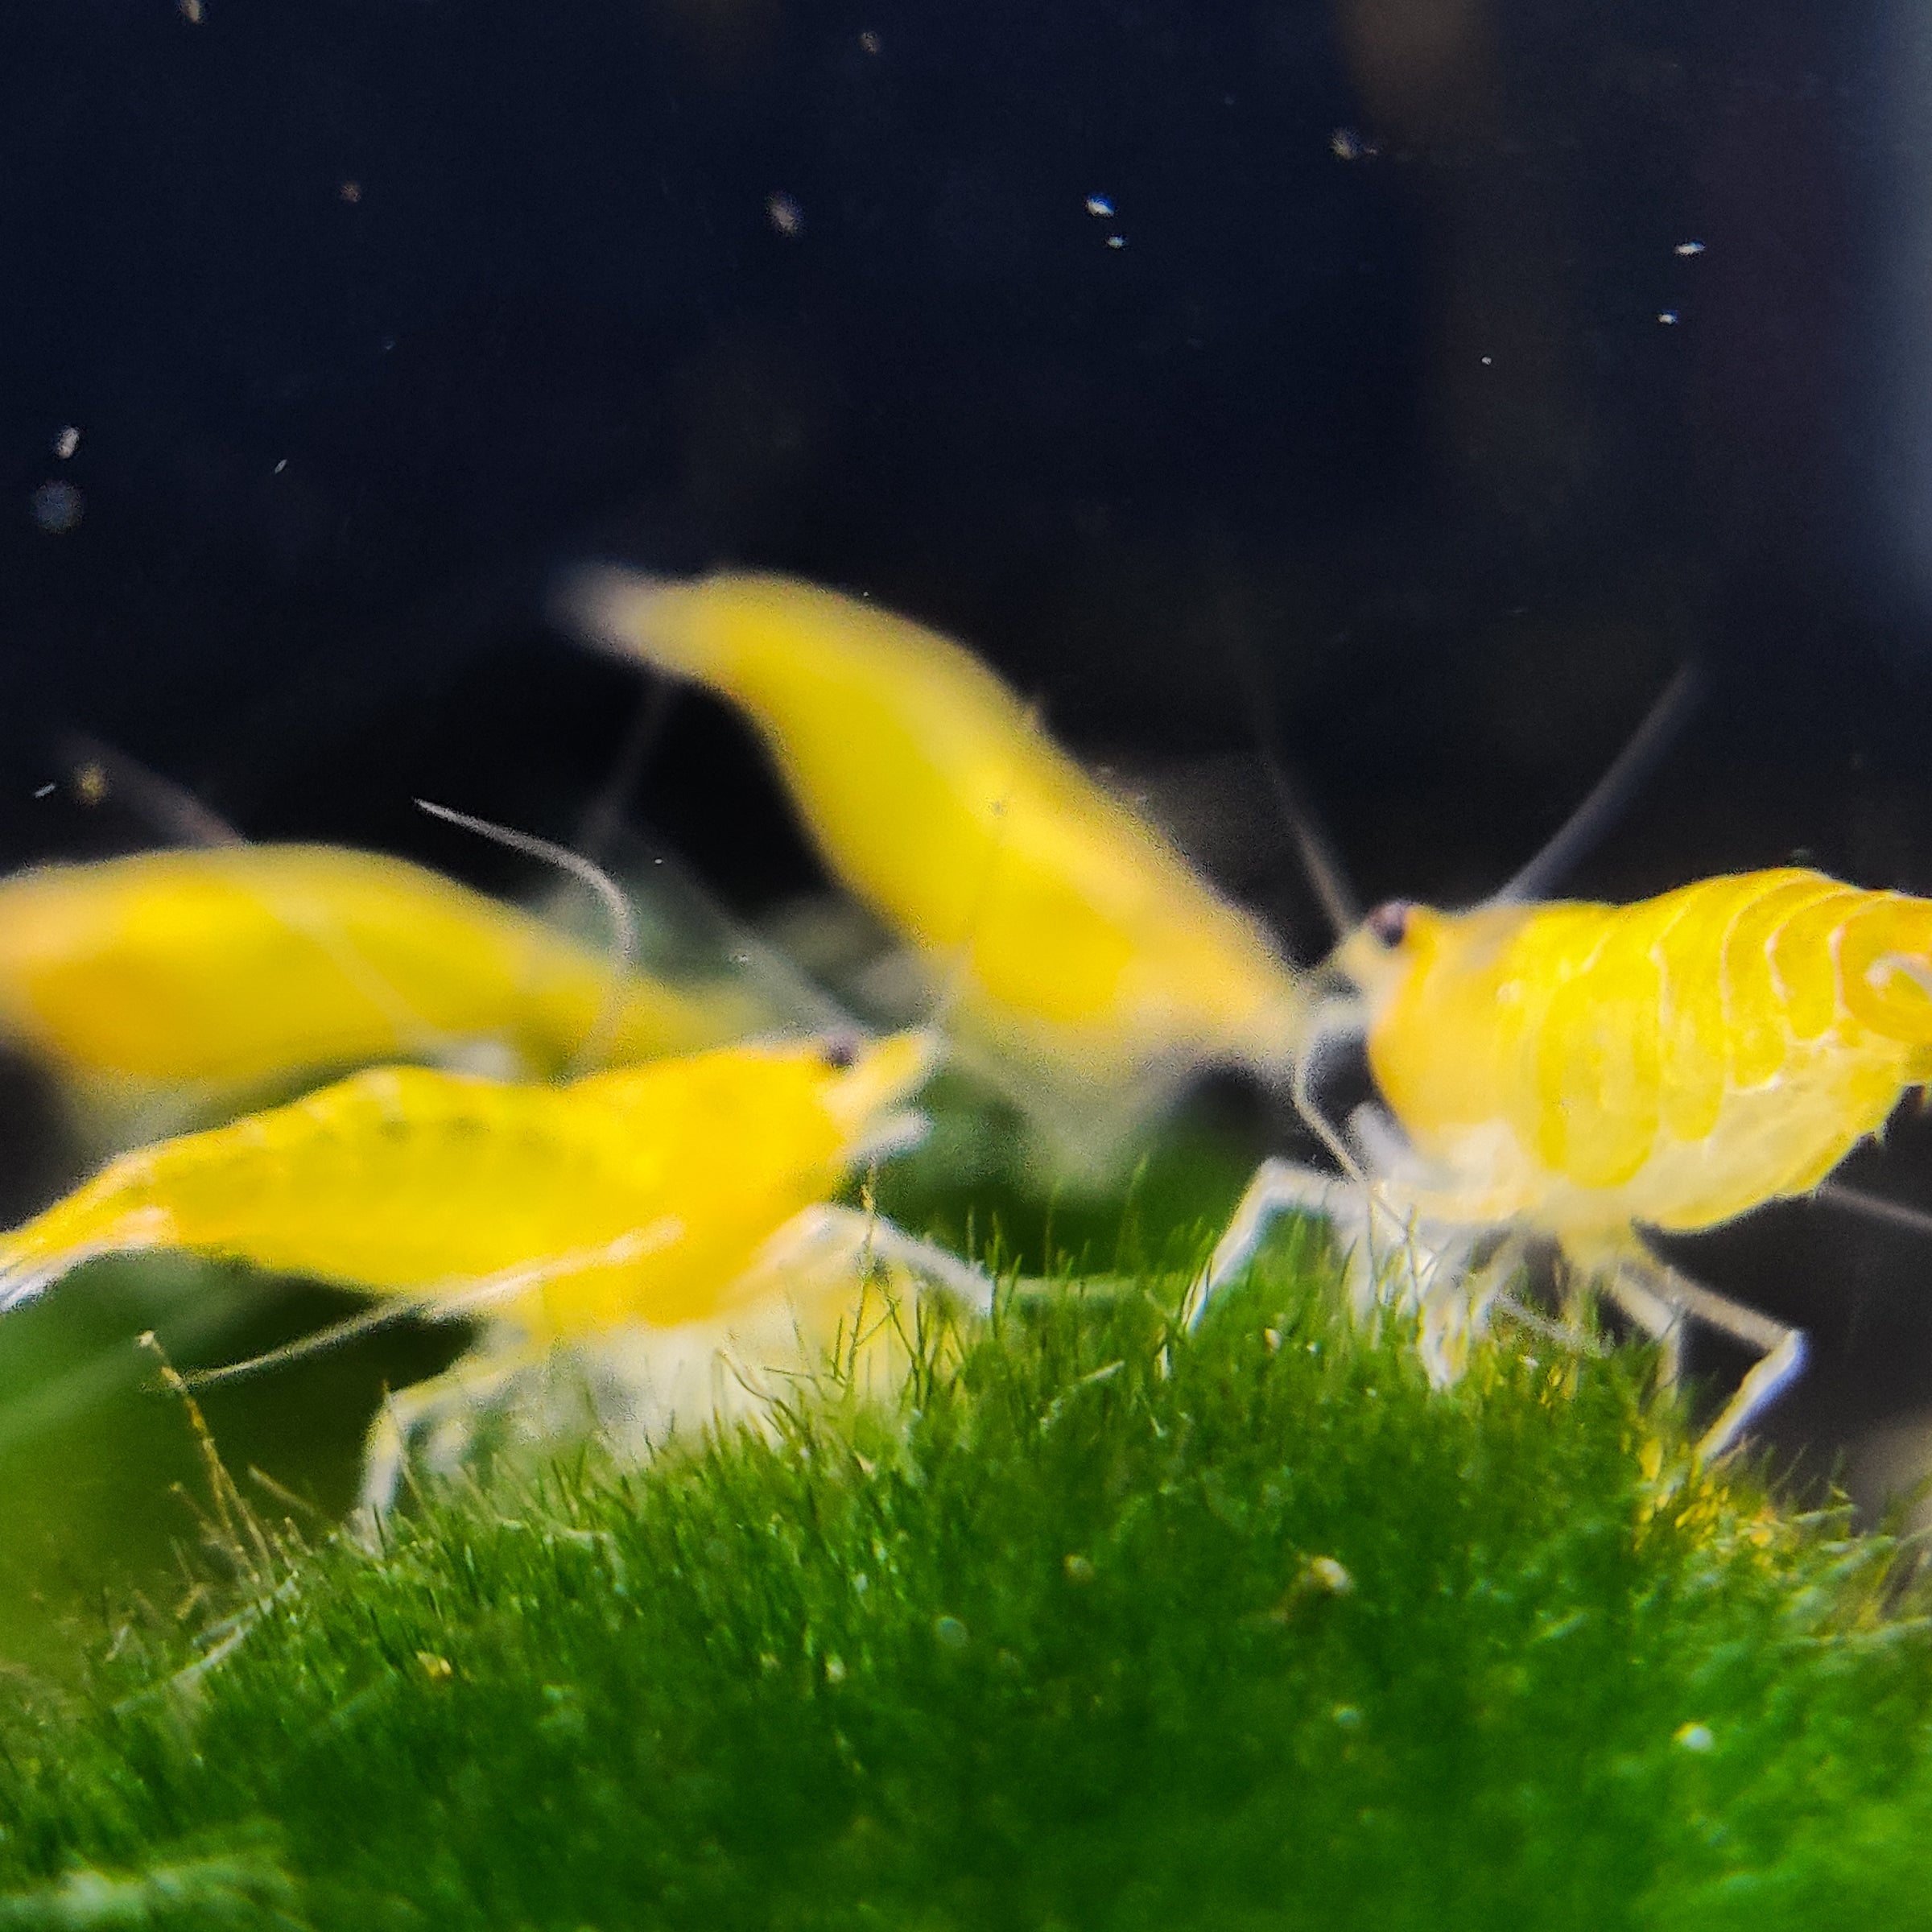 PREMIUM** Java moss aquarium live aquatic plant BUY 2 GET 1 FREE!